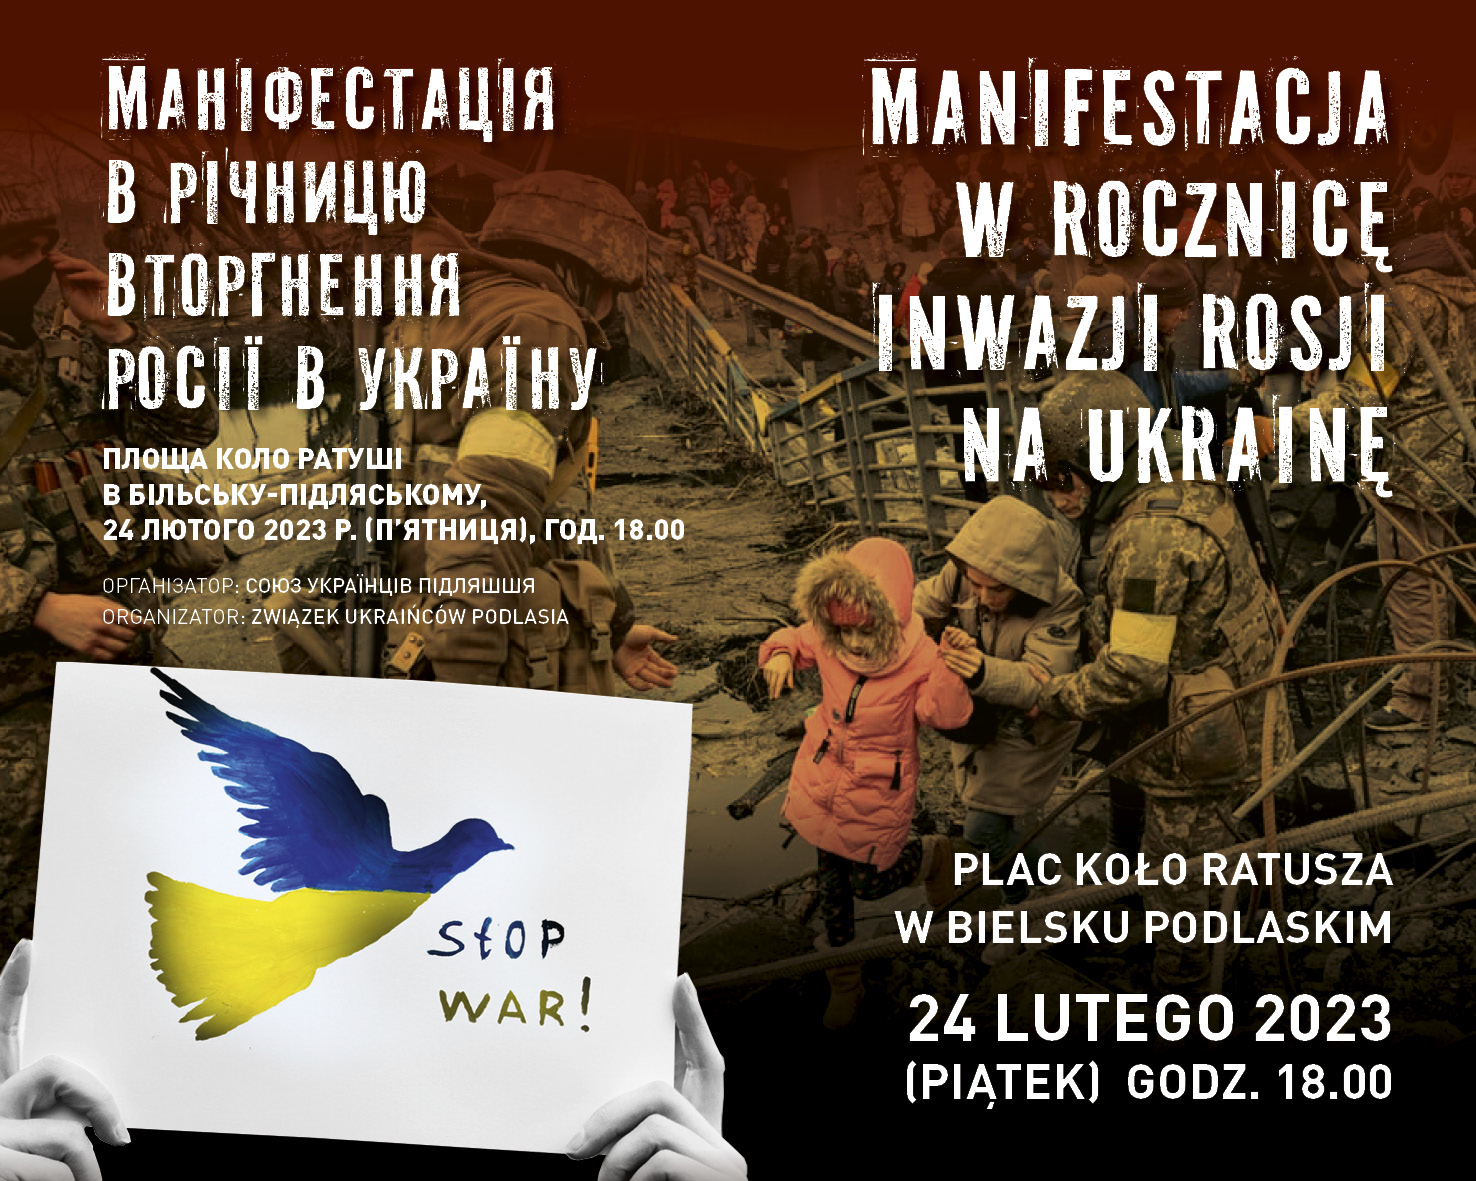 Manifestacja w rocznicę inwazji Rosji na Ukrainę